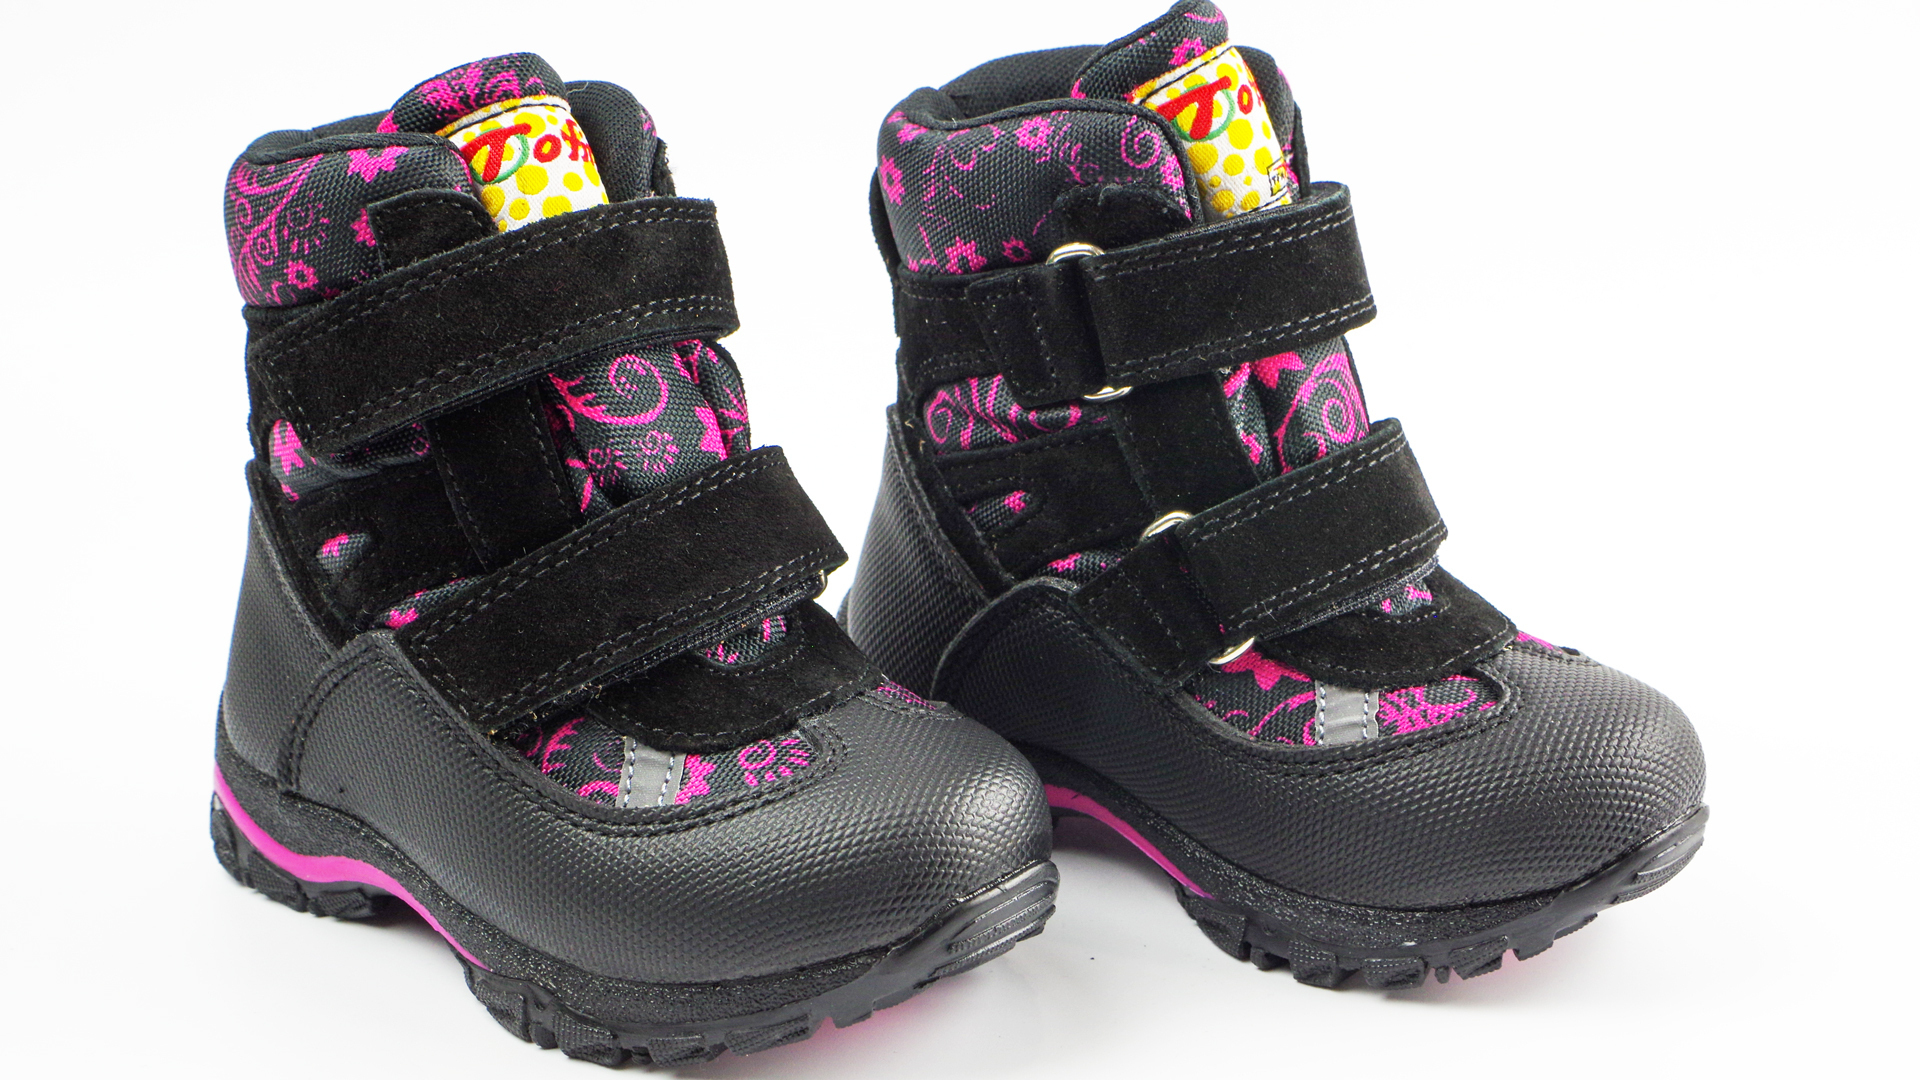 Мембранные зимние ботинки (2150) материал Мембрана, цвет Черный  для девочки 22-25 размеры – Sole Kids, Днепр. Фото 2